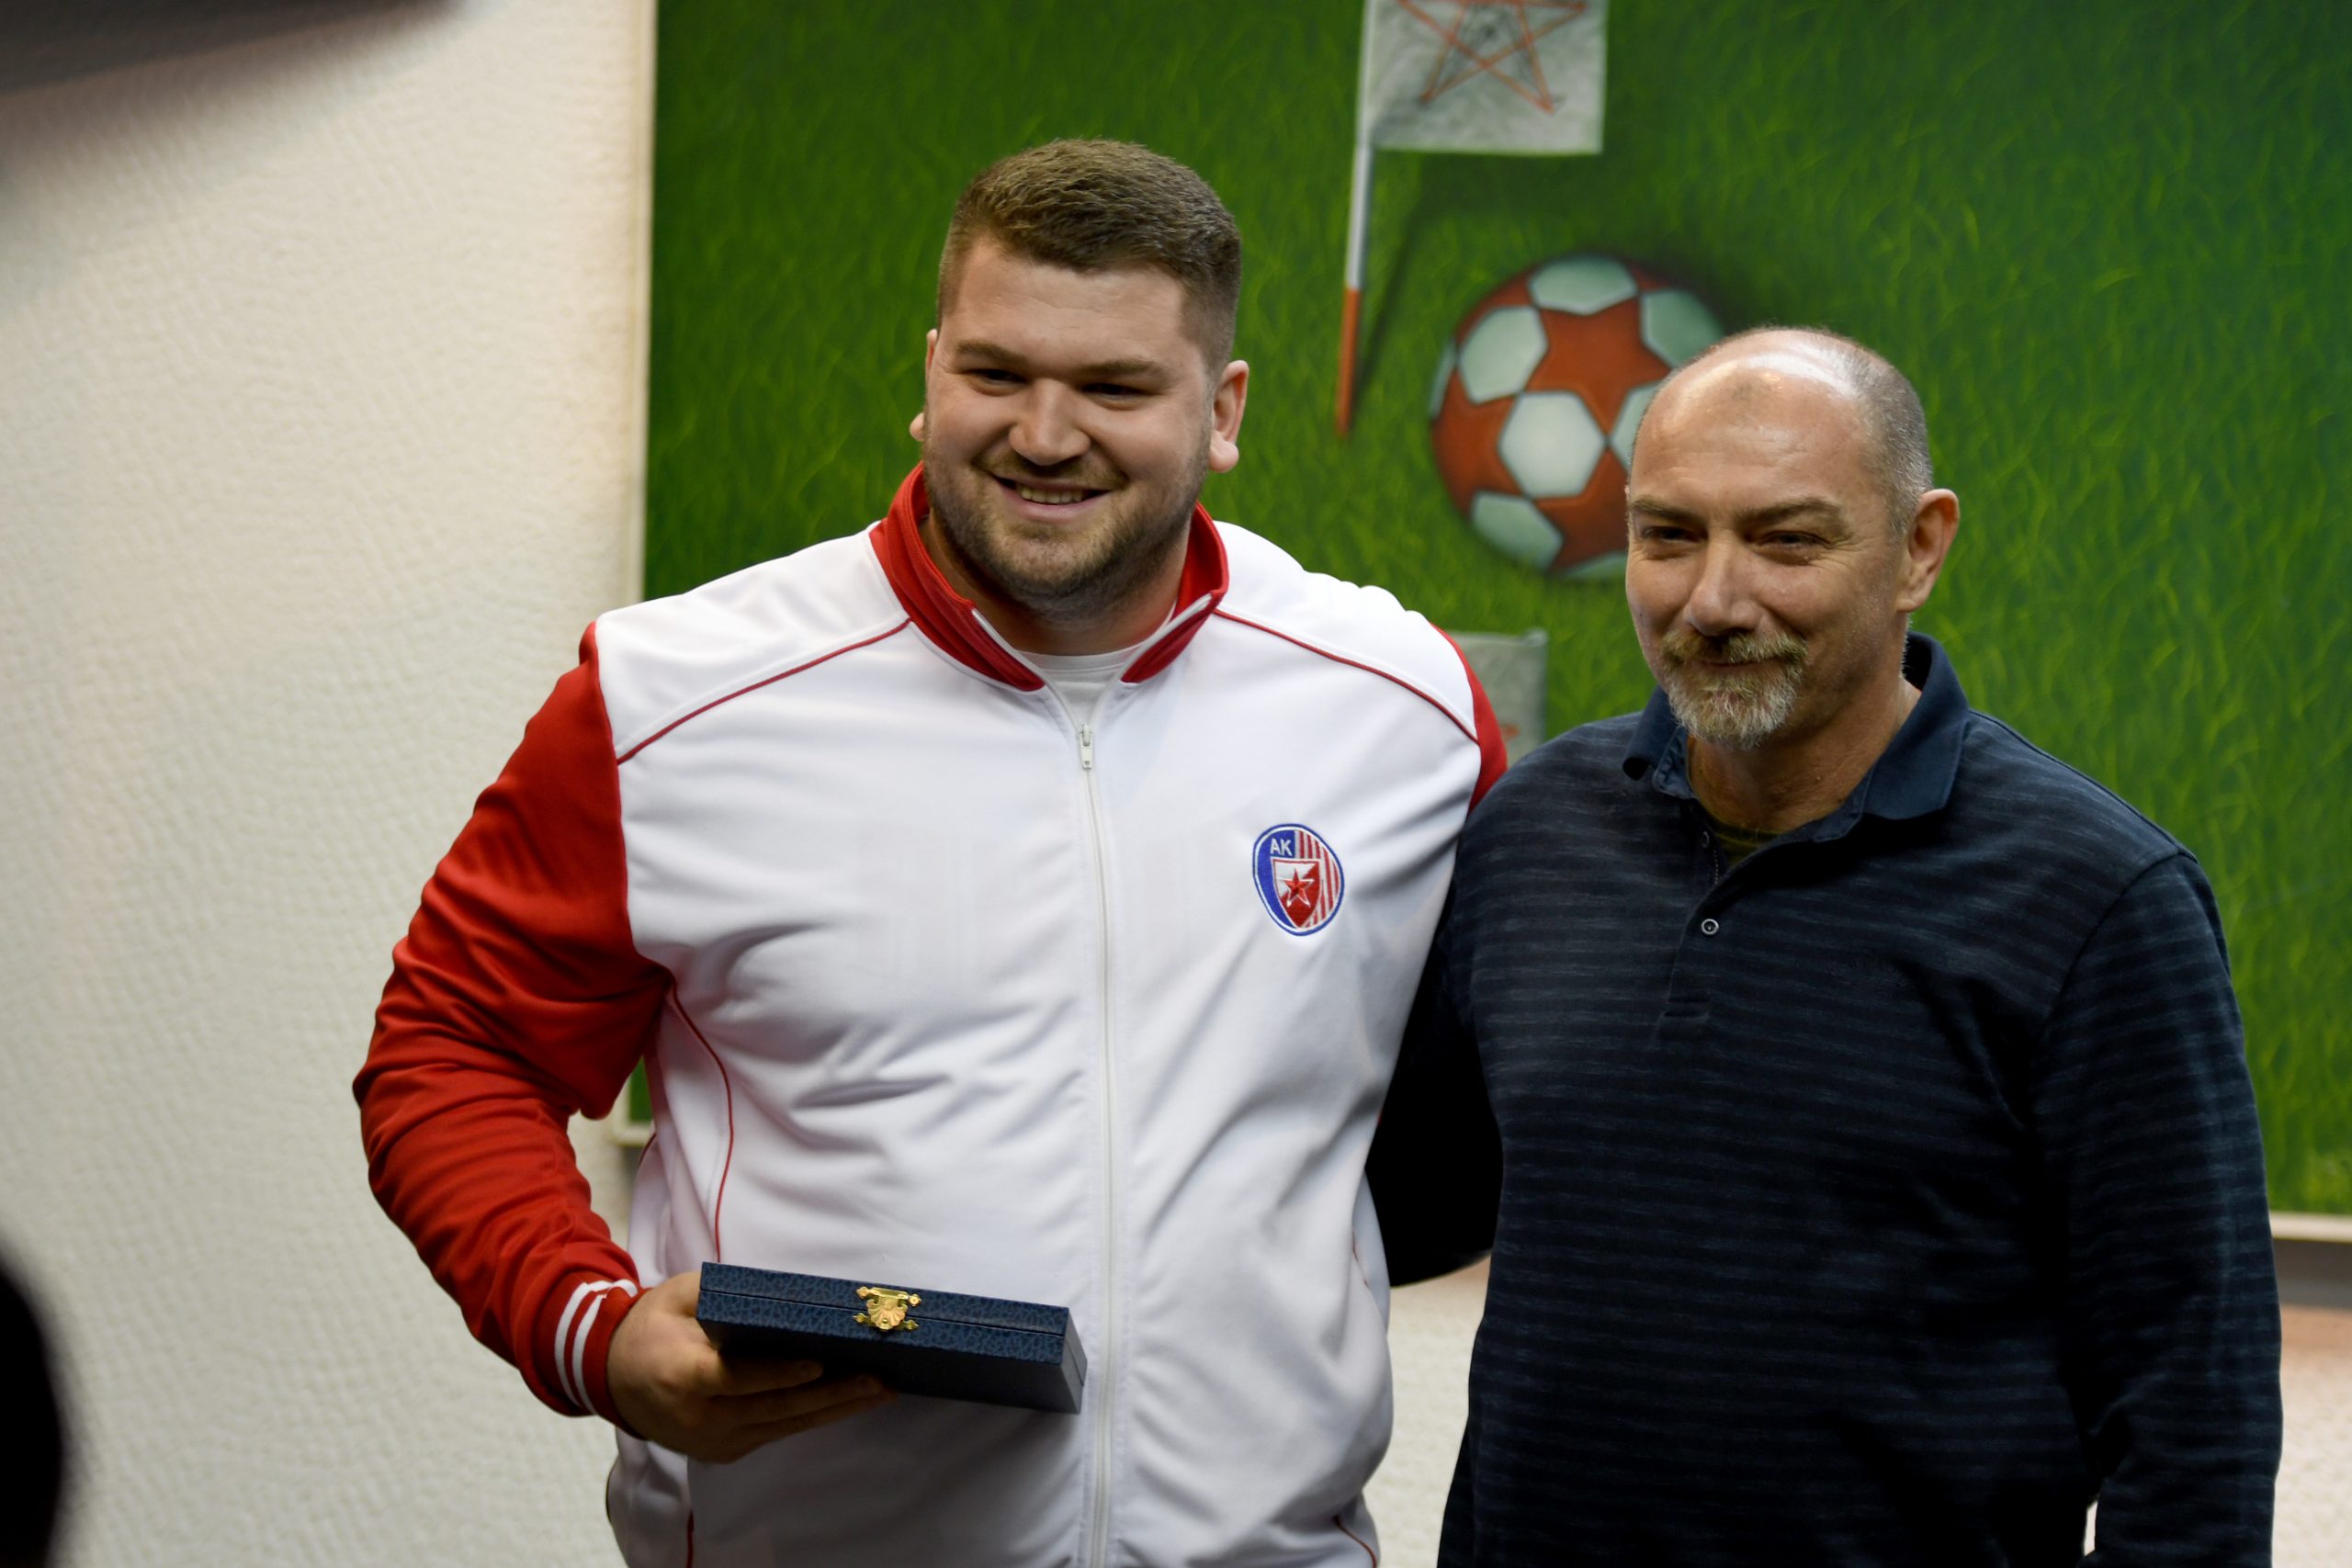 Armin Sinančević, Godišnja dodela nagrada AK Crvena zvezda